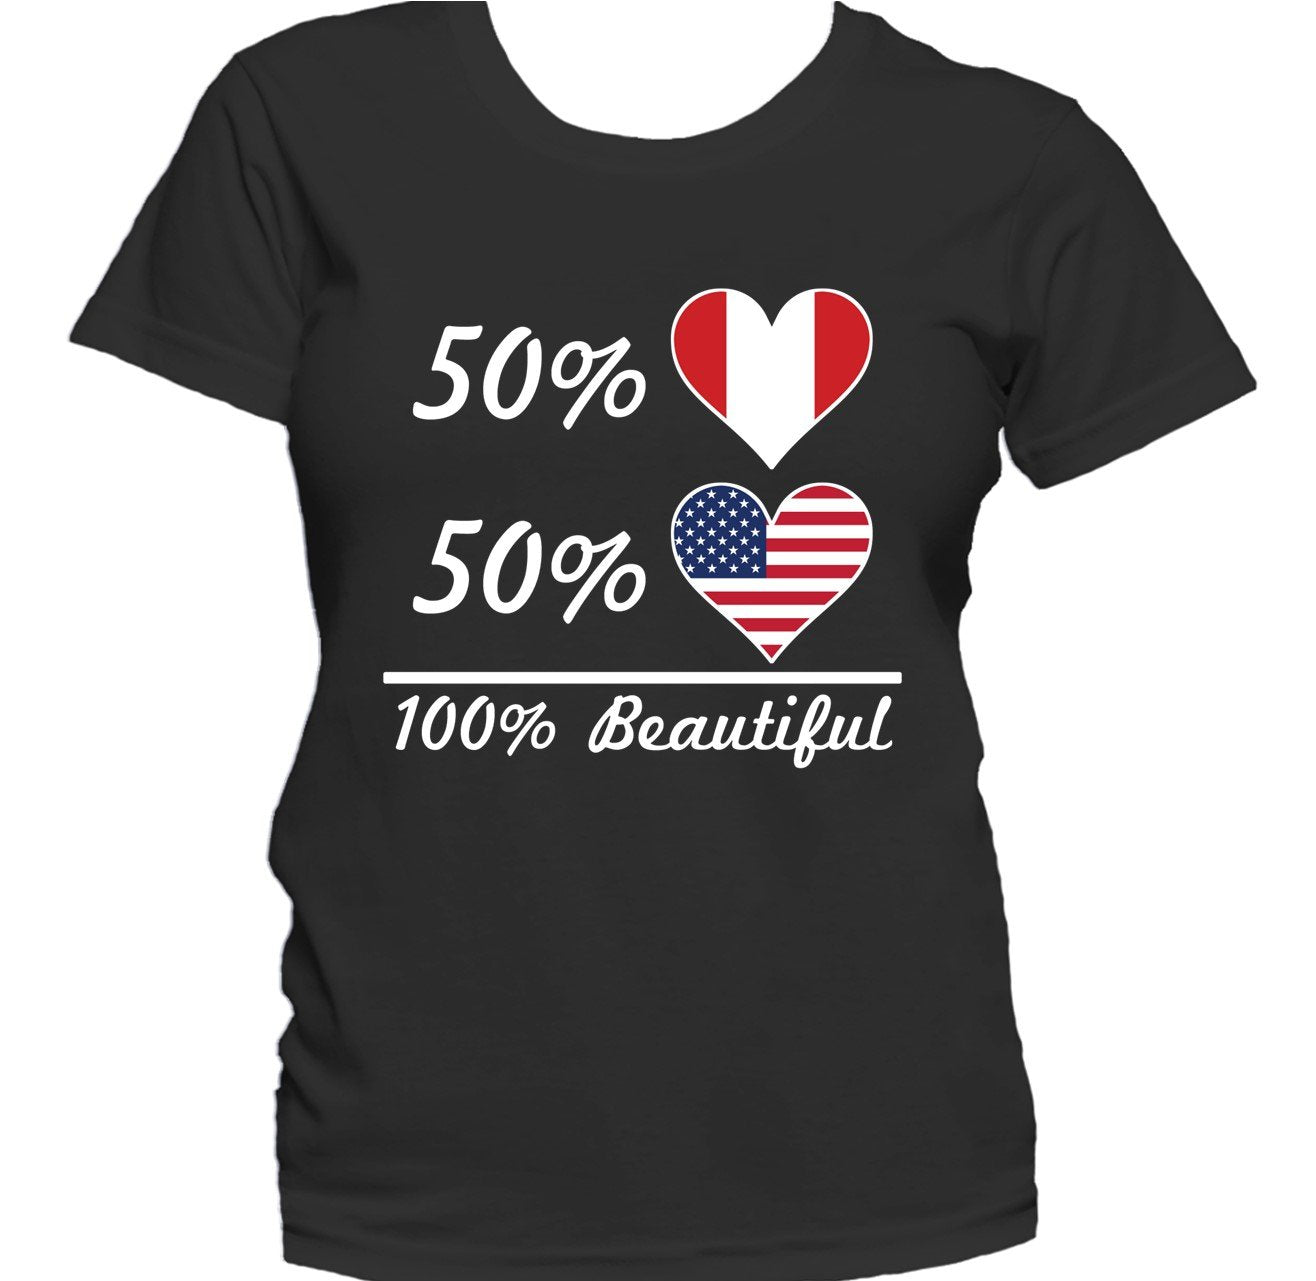 50% Peruvian 50% American 100% Beautiful Women's T-Shirt